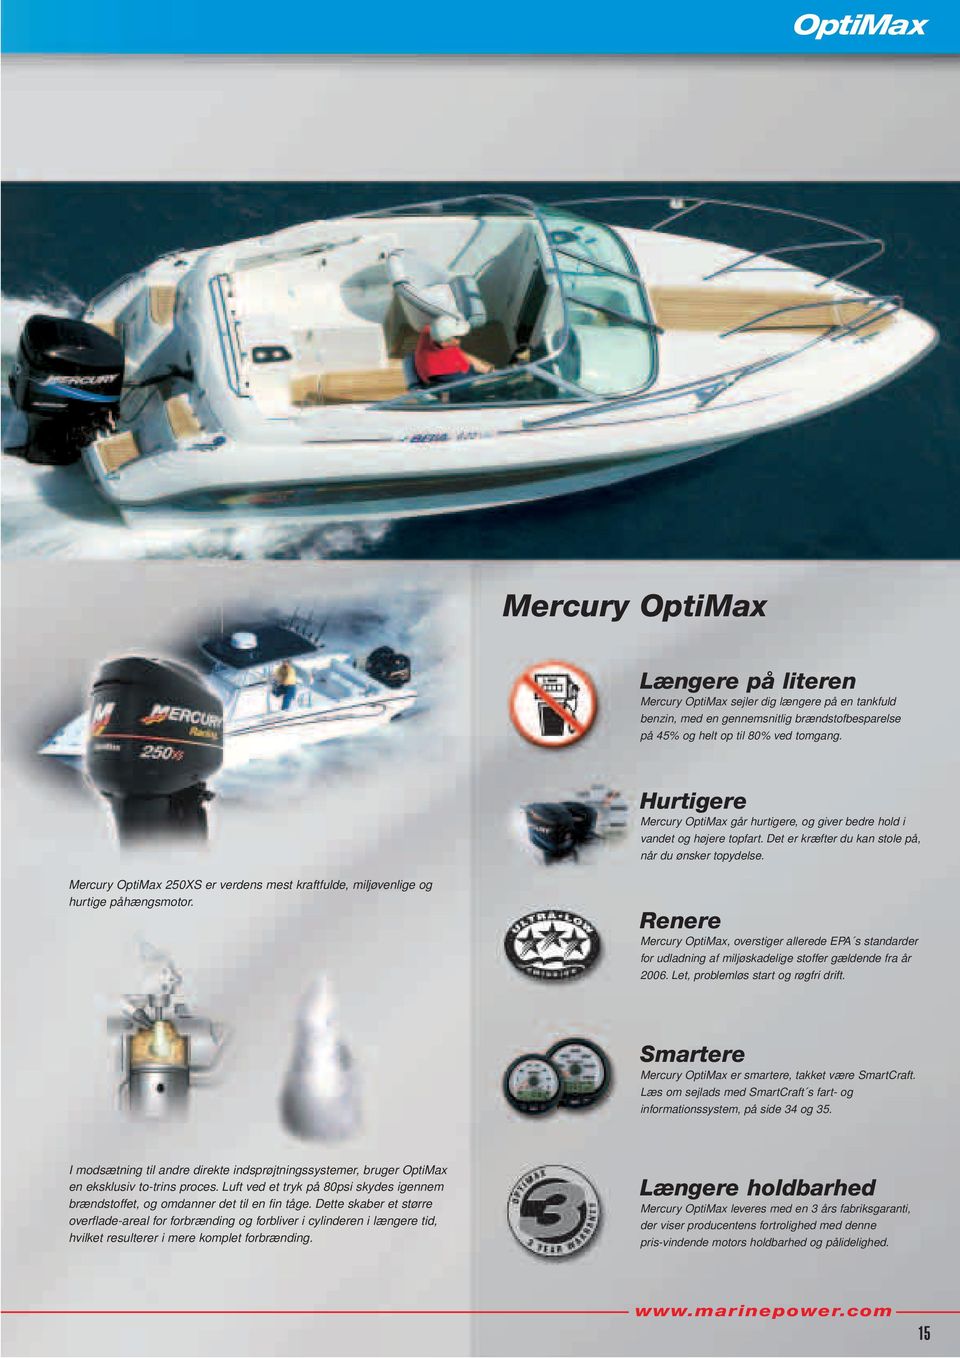 Mercury OptiMax 250XS er verdens mest kraftfulde, miljøvenlige og hurtige påhængsmotor.